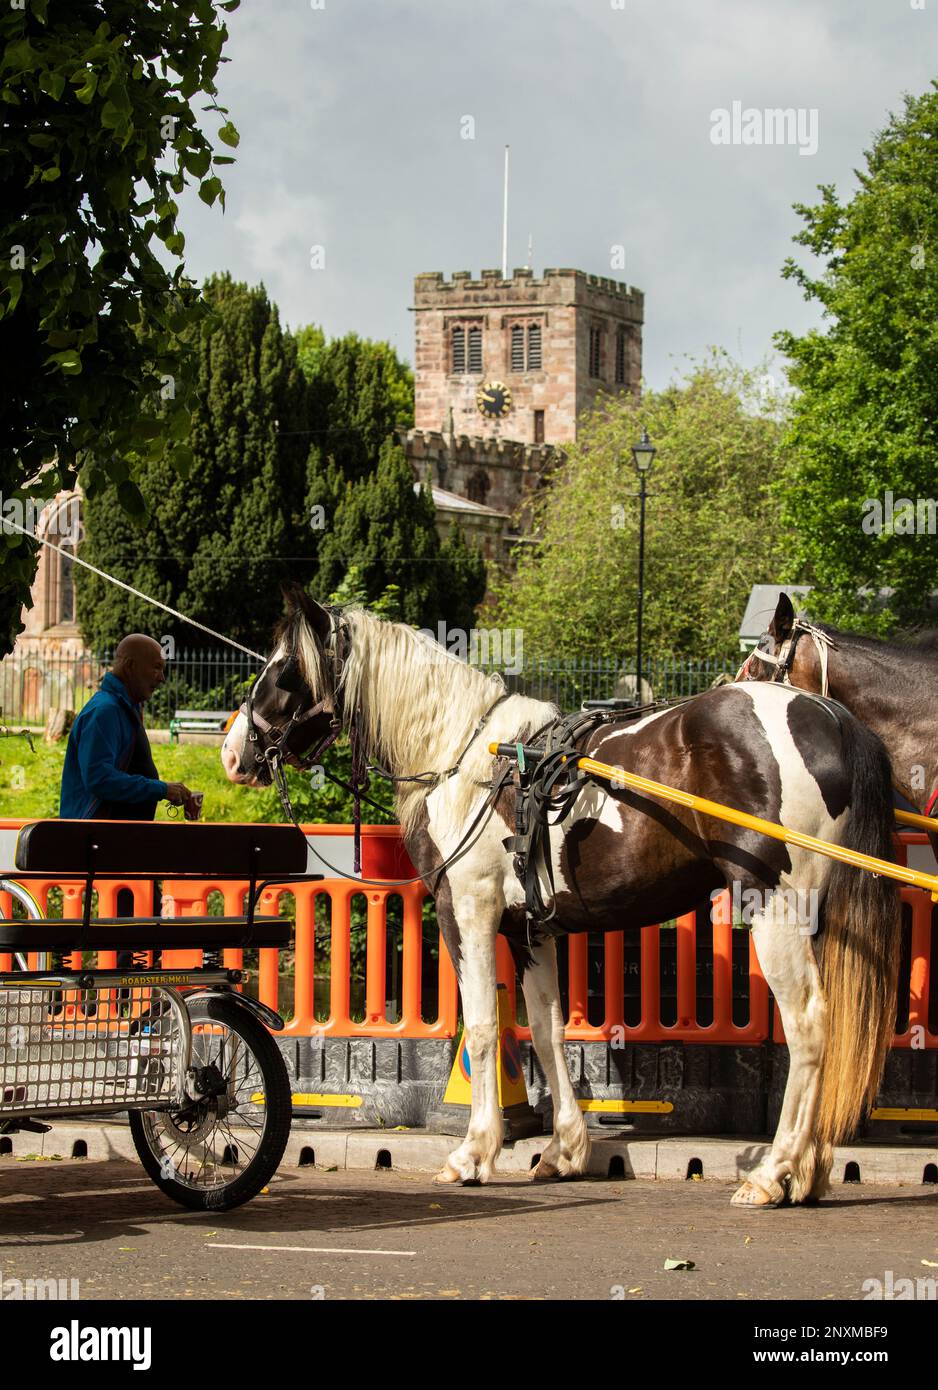 Ein Paar braune und weiße Pferde, die vor der Kirche Appleby Horse Fair Appleby in Westmorland Eden Valley Cumbria an einem schmolligen oder Trabrennwagen befestigt sind Stockfoto